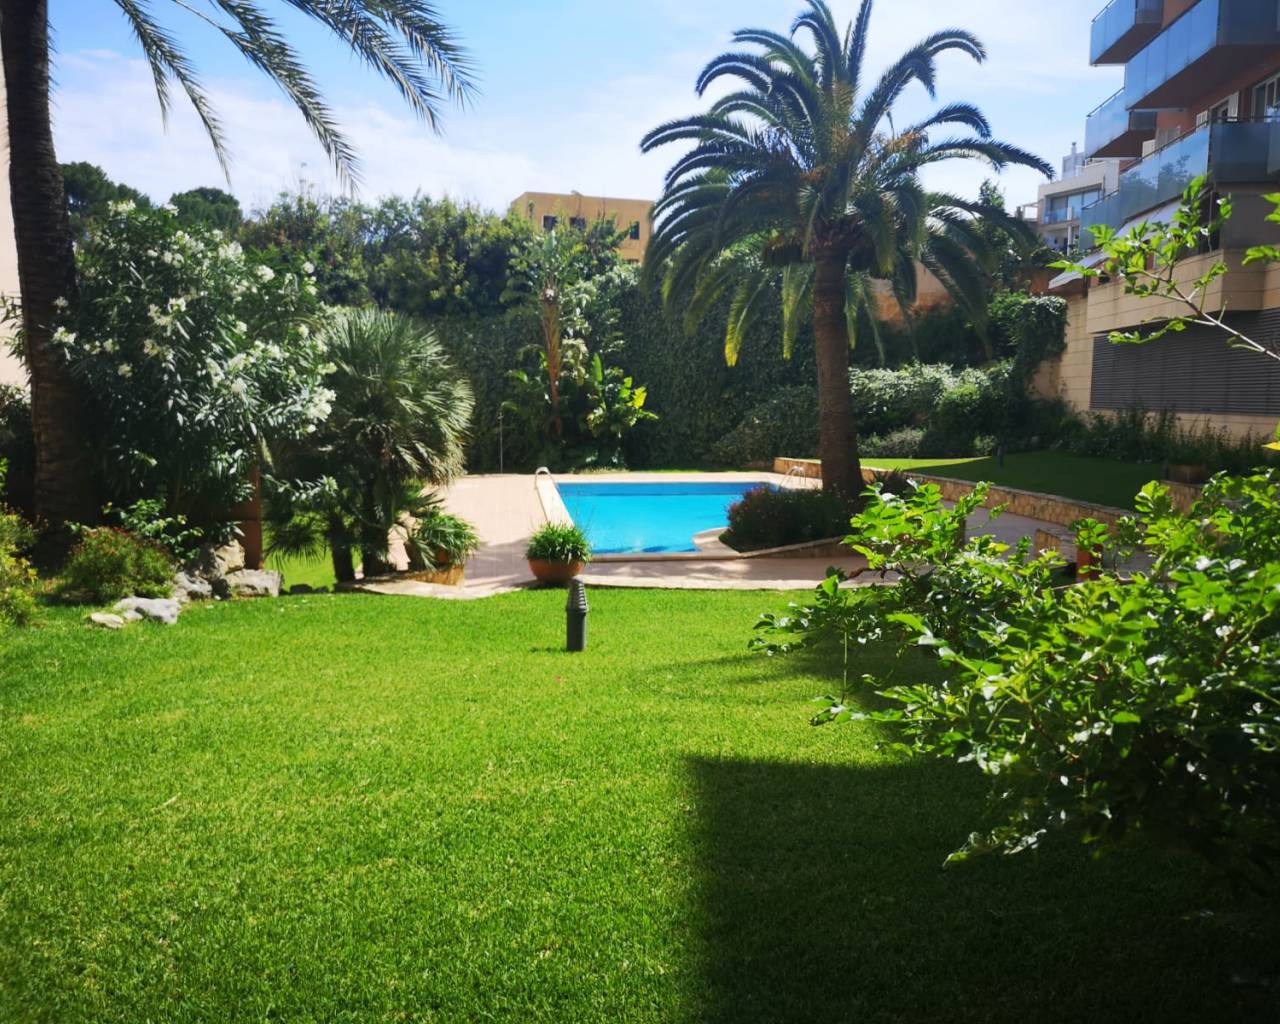 Apartment - For Rent - Palma de Mallorca - Palma De Mallorca